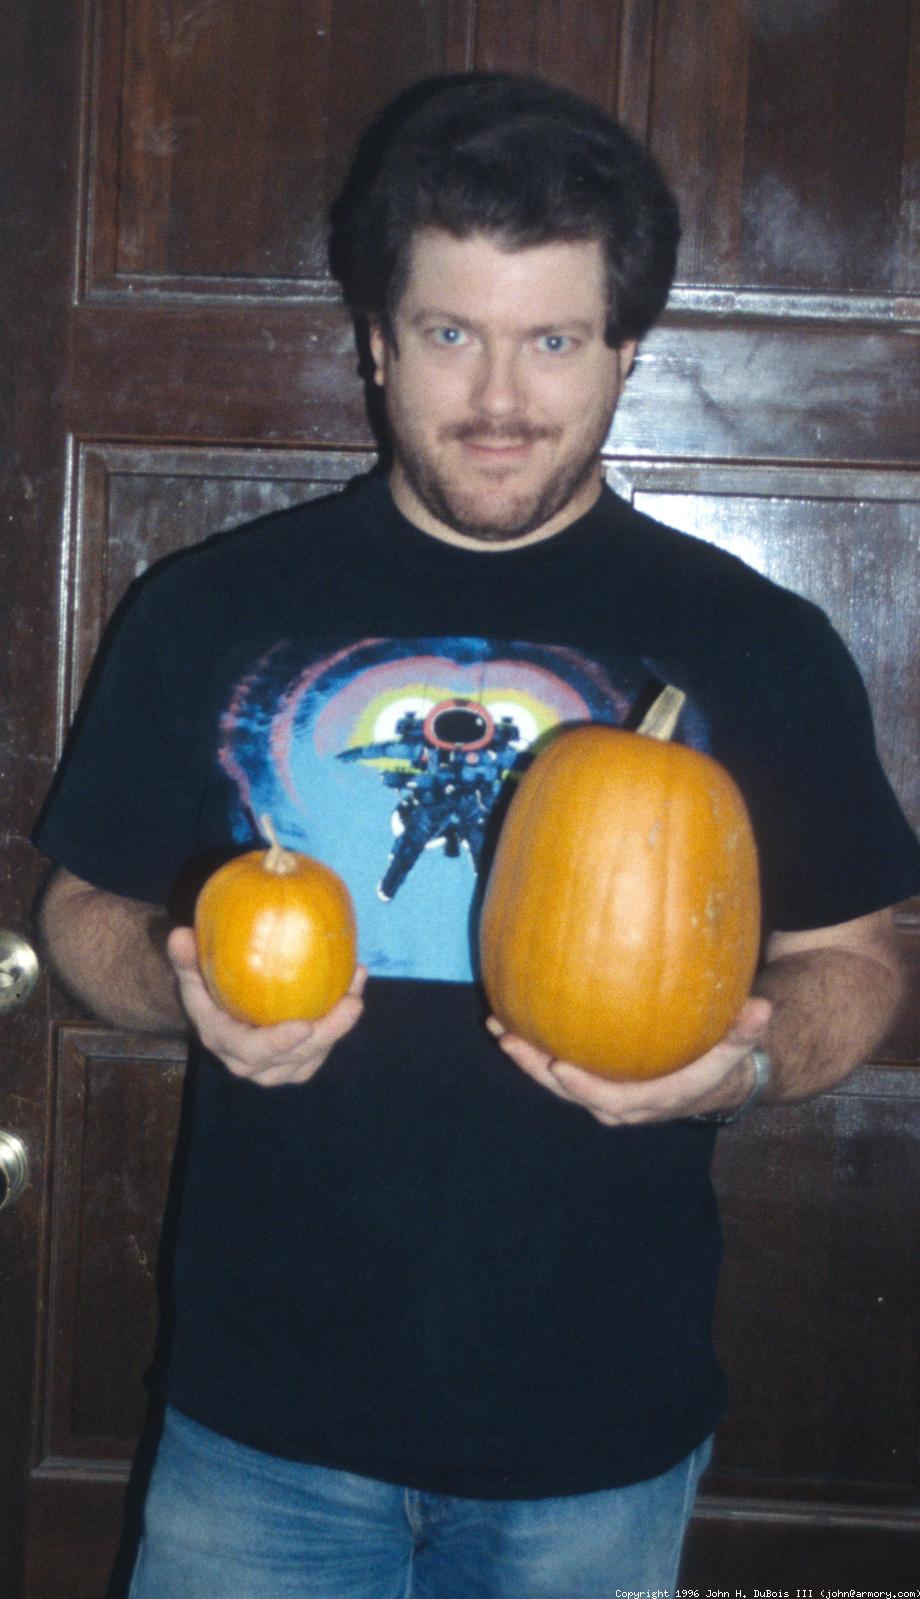 John & Pumpkins